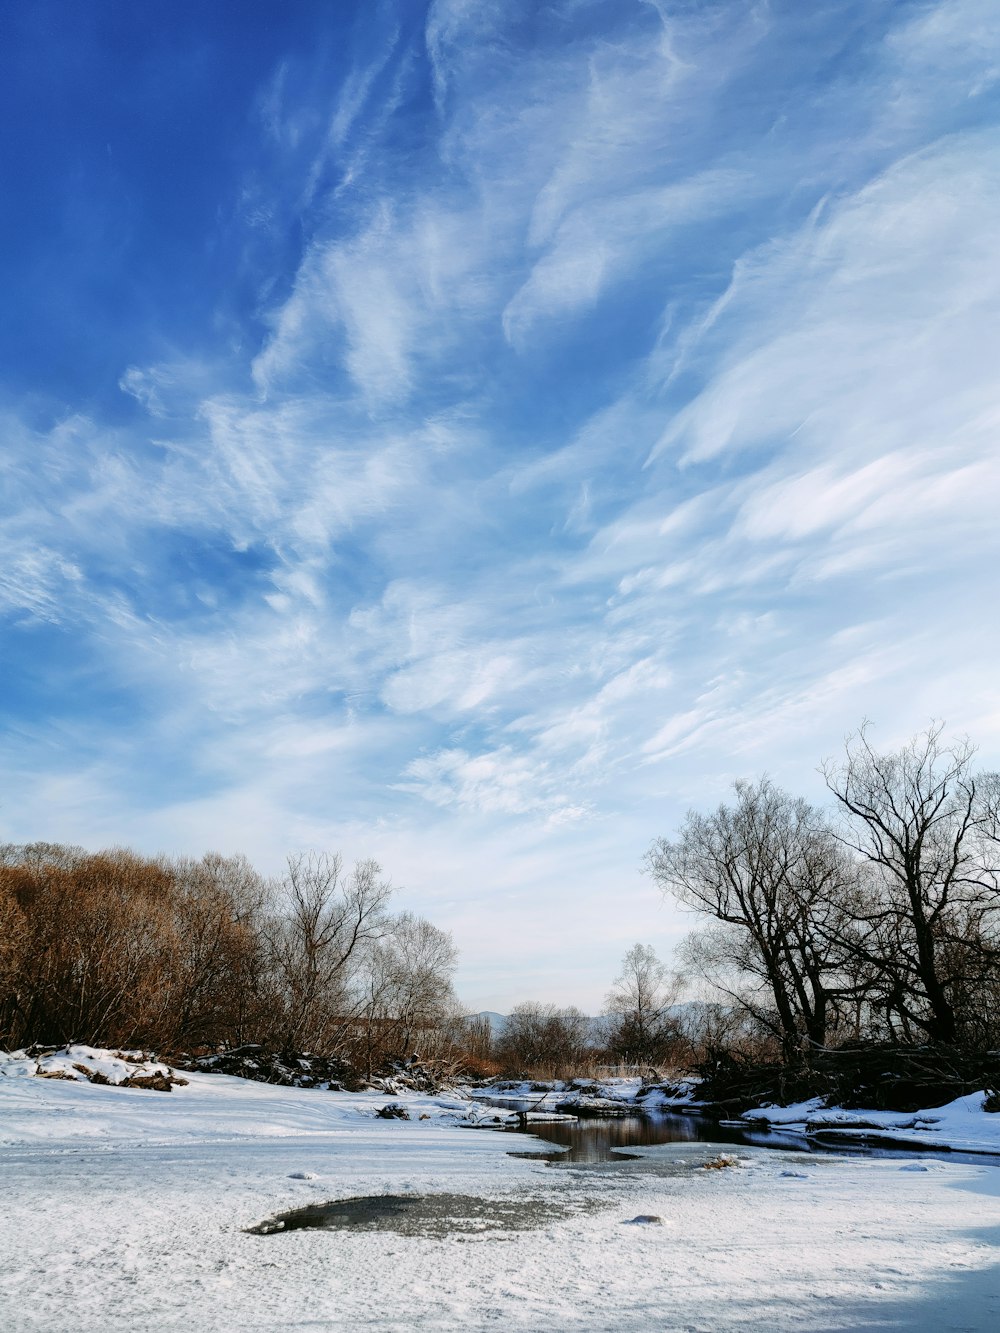 árboles desnudos en suelo cubierto de nieve bajo cielo nublado azul y blanco durante el día